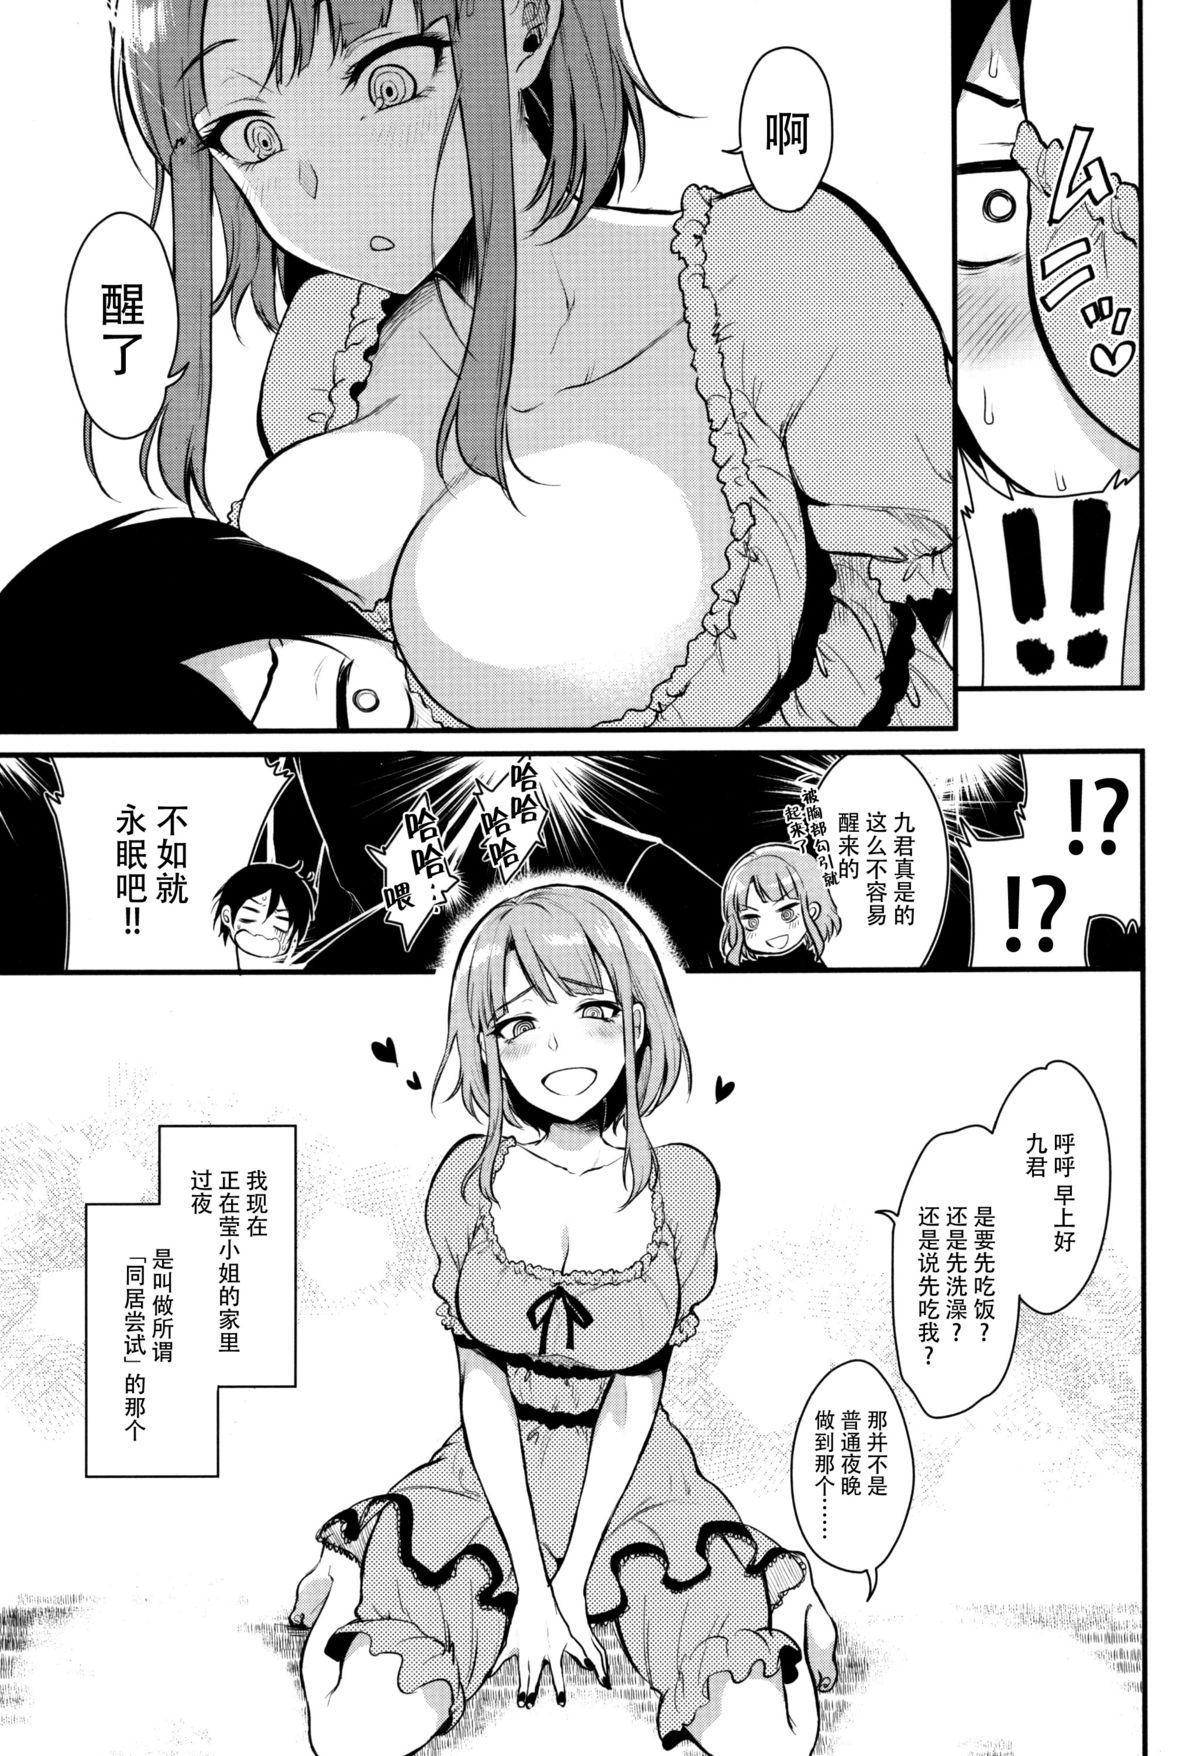 Ex Gf Otona no Dagashi 3 - Dagashi kashi Small Tits - Page 8